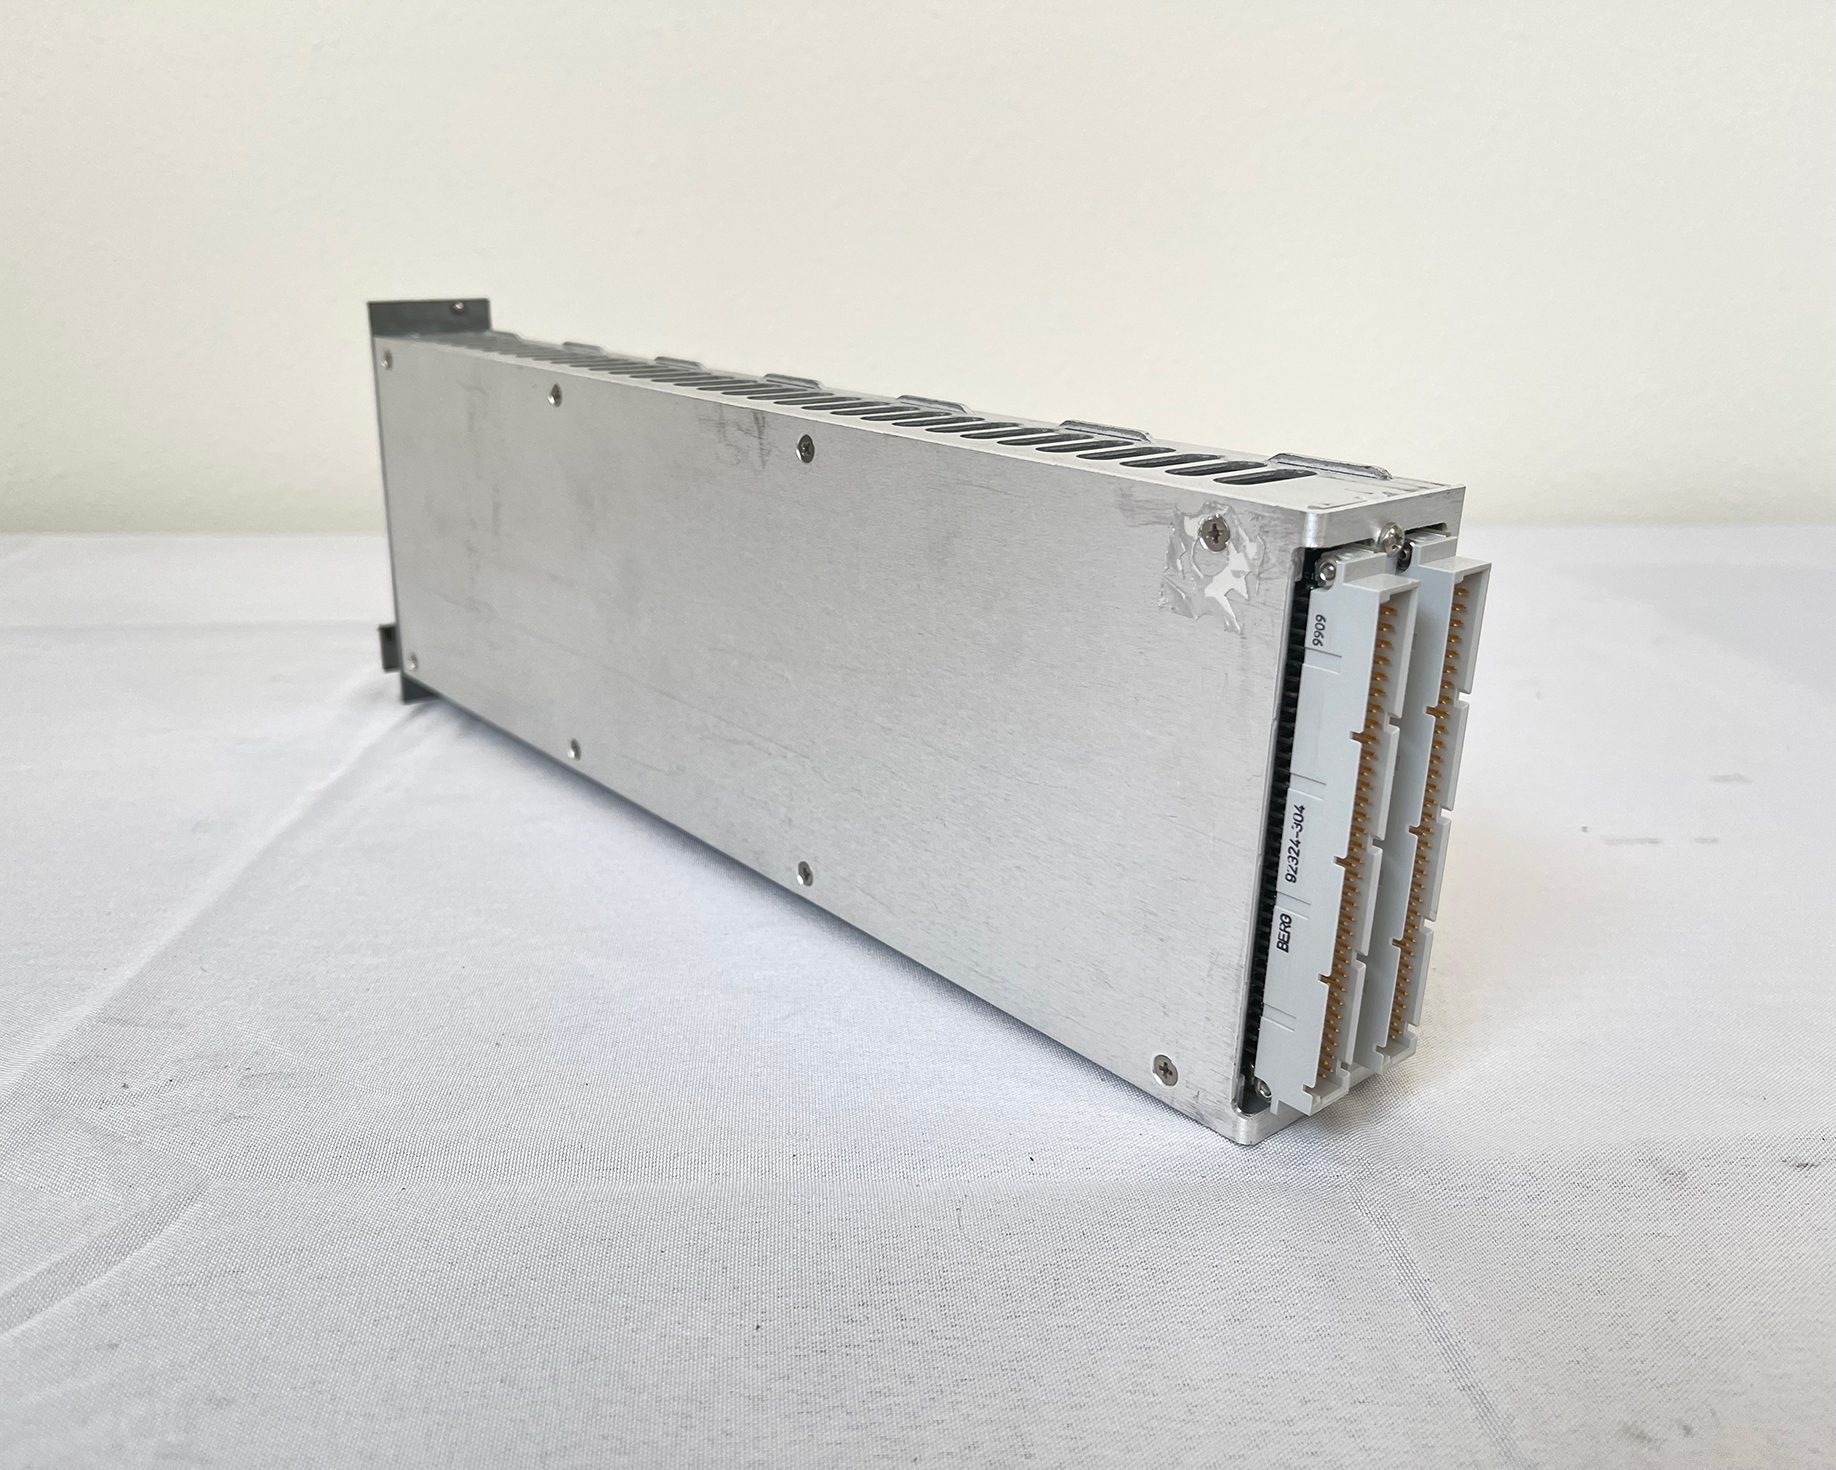 Buy JDSU SWS 15107 Detector Module -61963 Online